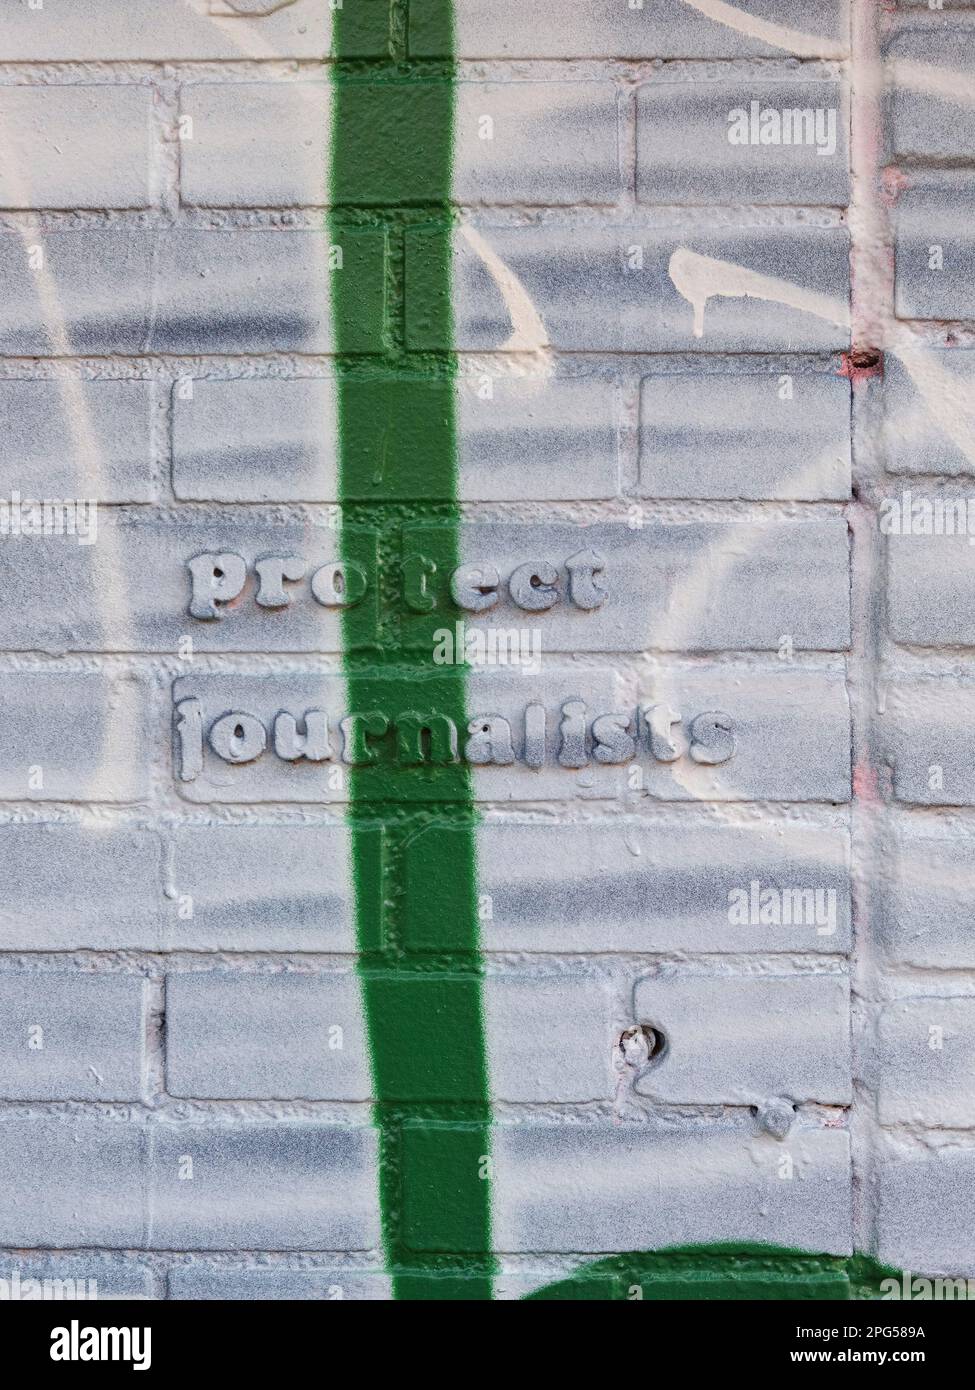 "Schützen Sie Journalisten' Zitat auf einer Mauer voller Farbe und Graffiti, New York City, New York, USA. Stockfoto